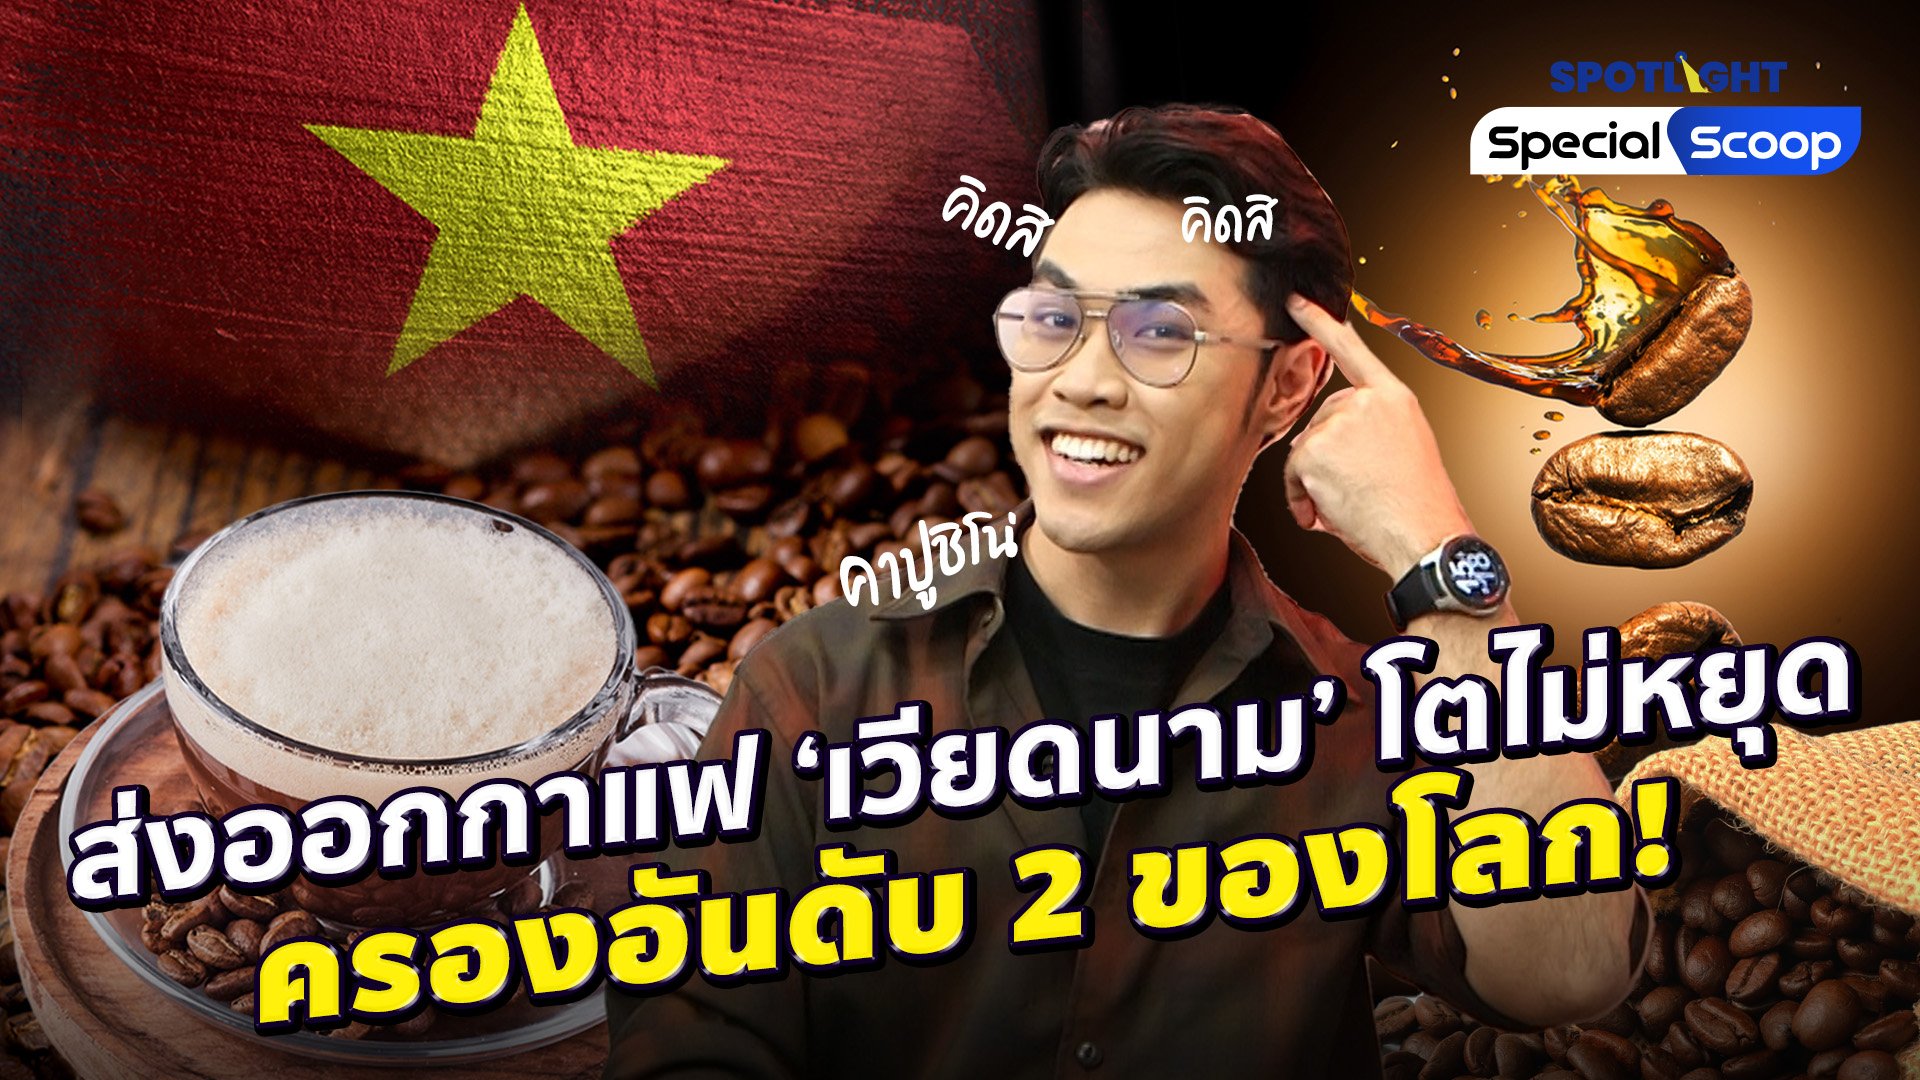 ส่งออกกาแฟ 'เวียดนาม' โตไม่หยุดครองอันดับ 2 ของโลก!  | Spotlight | 3 พ.ย. 65 | AMARIN TVHD34